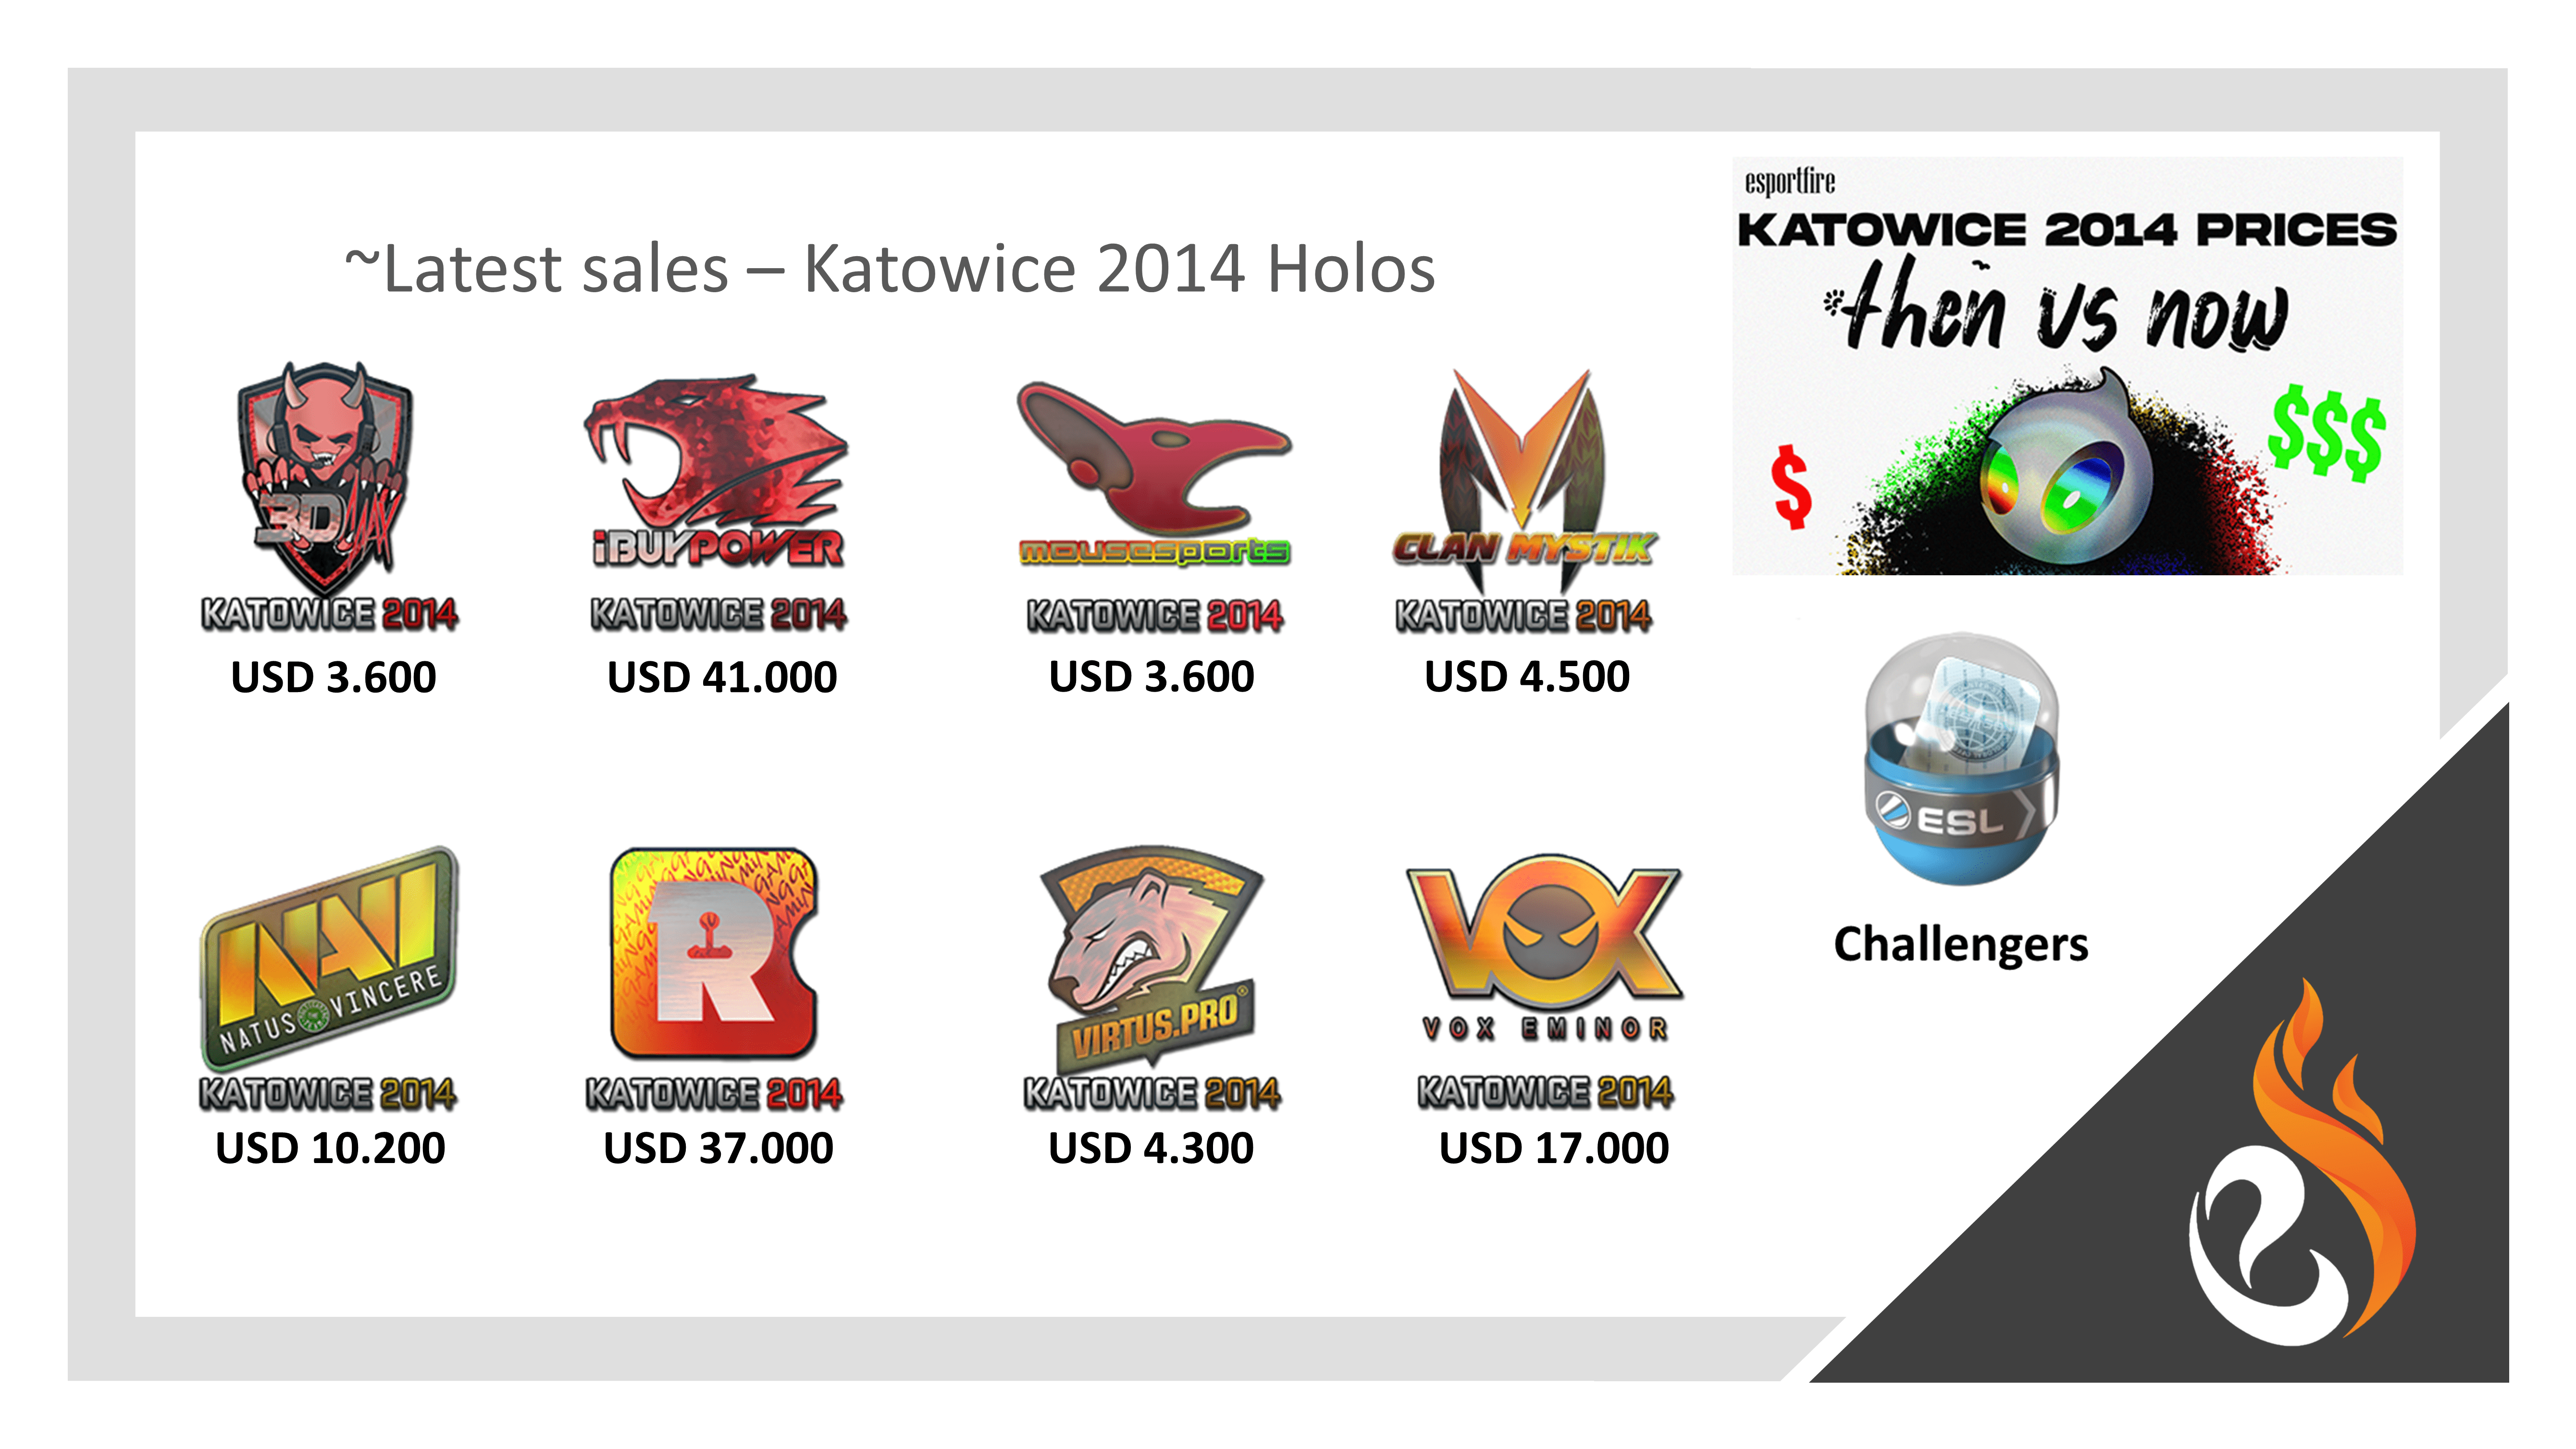 Kato14 prices